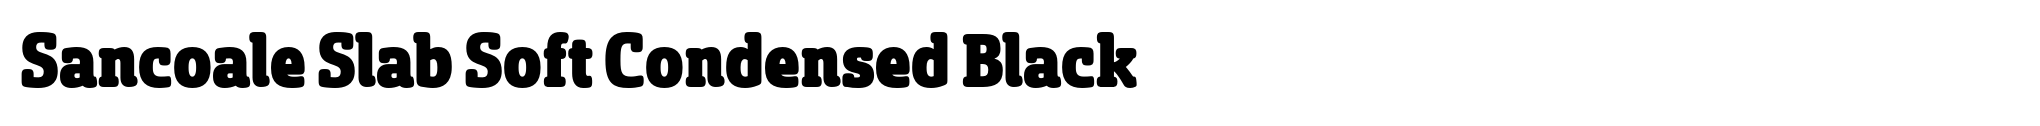 Sancoale Slab Soft Condensed Black image